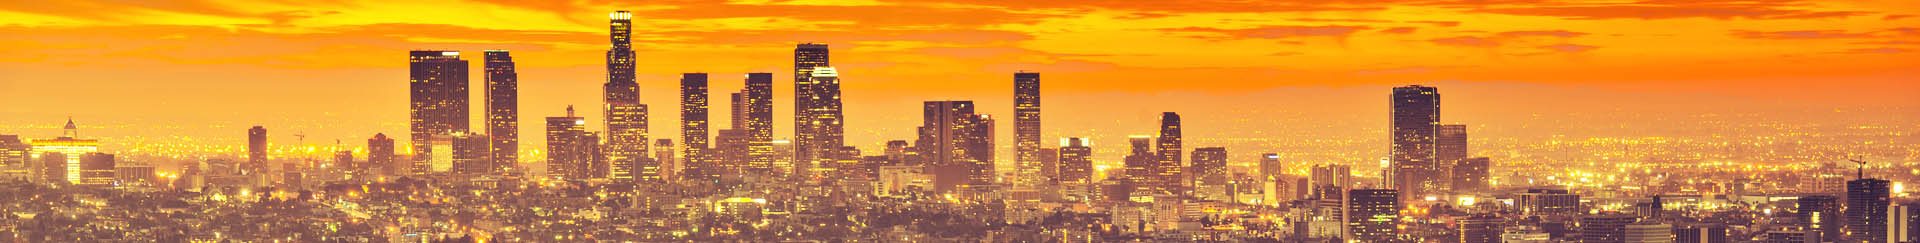 LA skyline at dusk